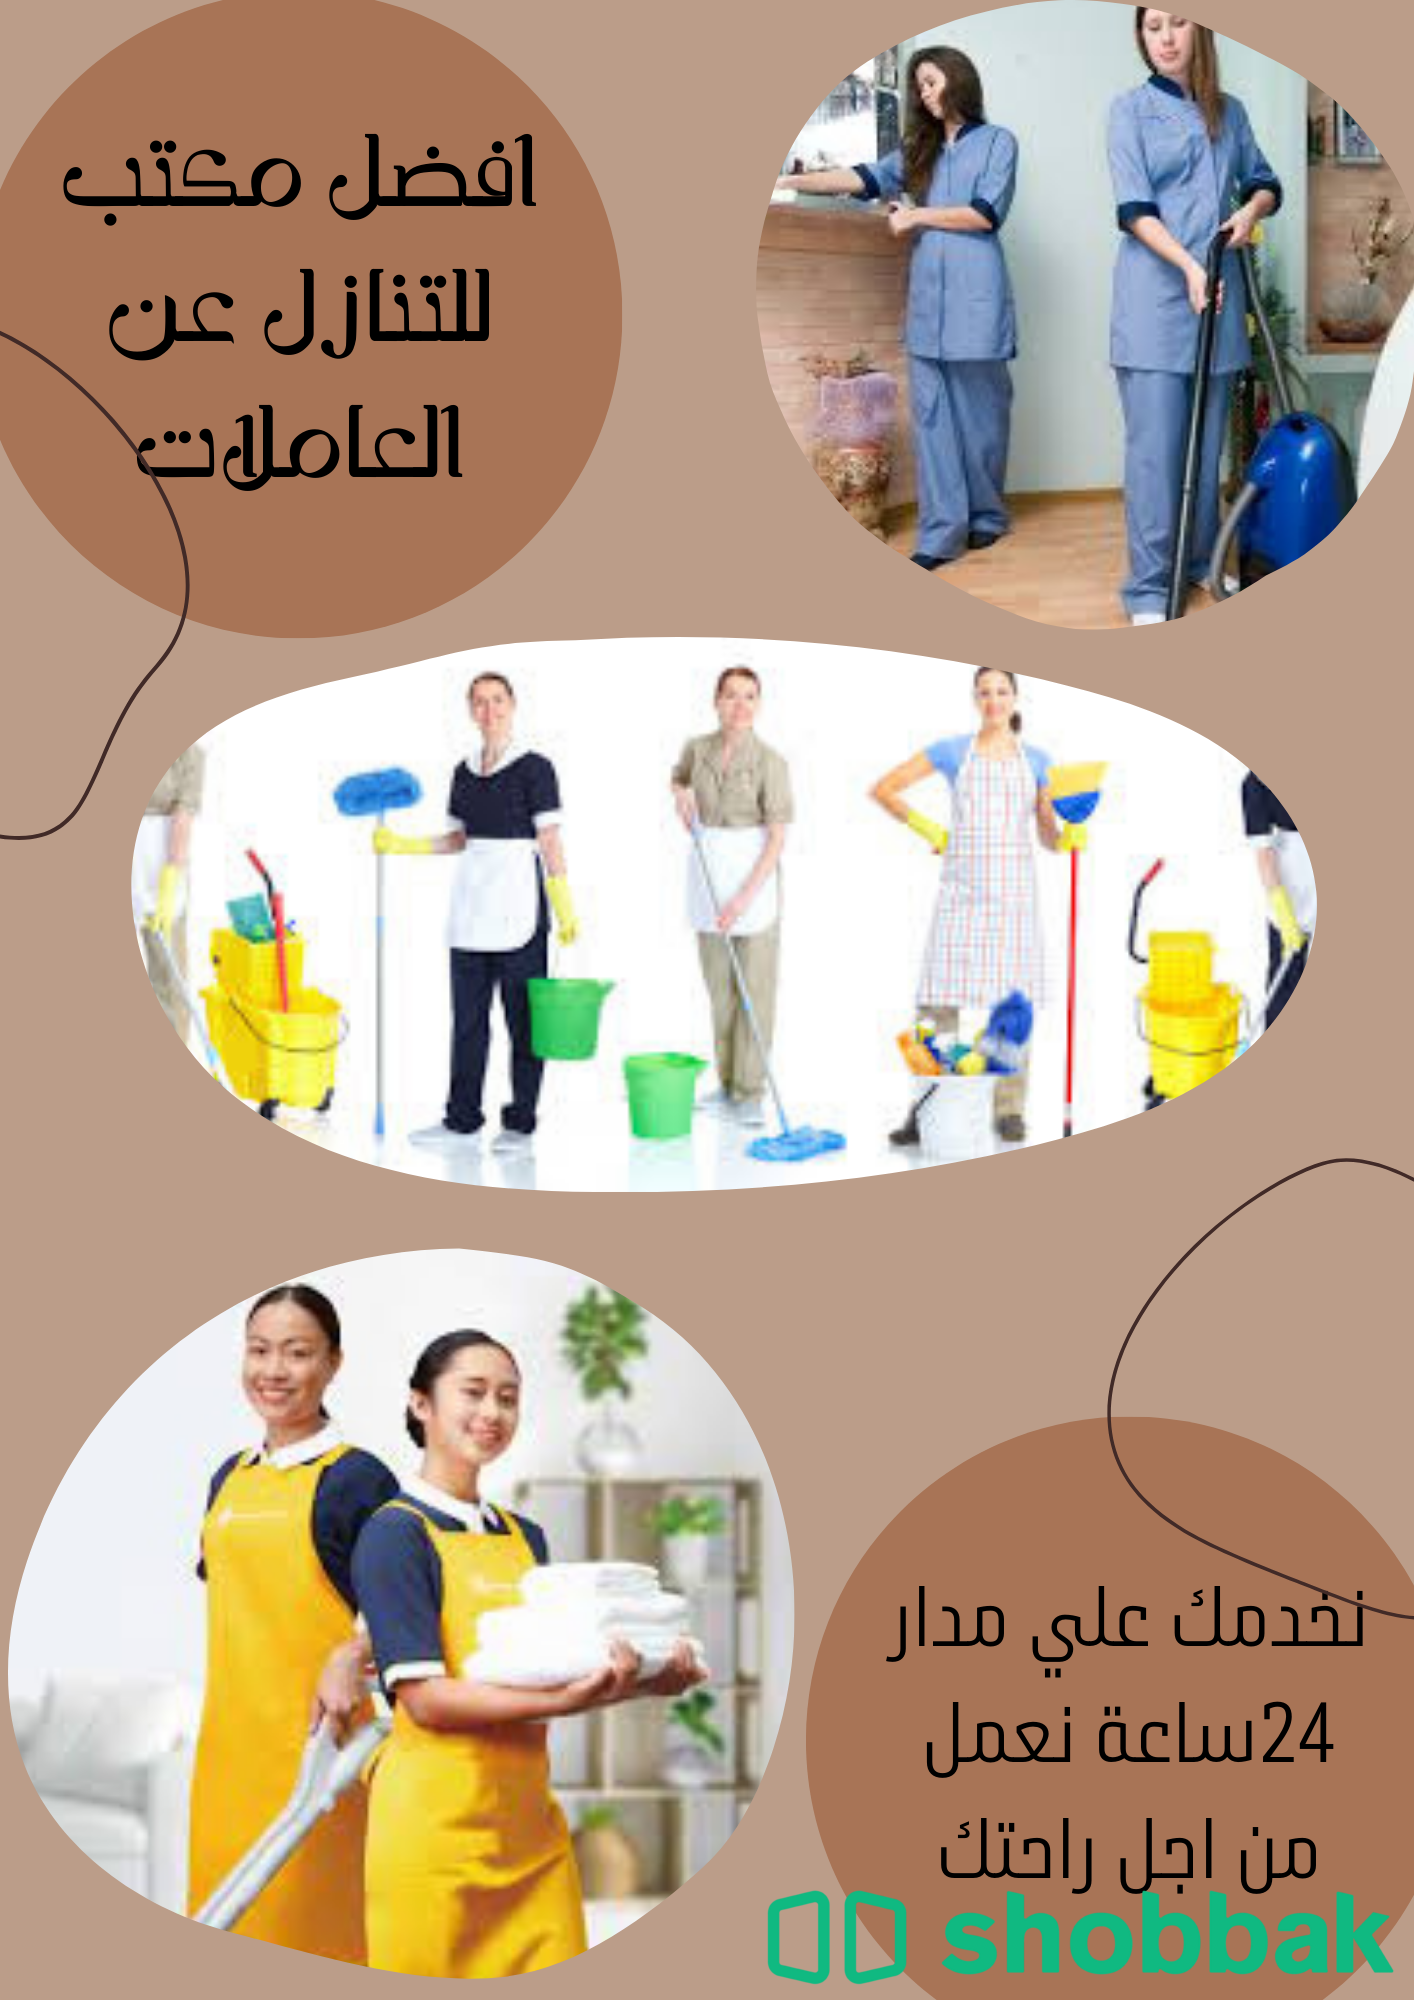 يوجد عاملات للتنازل من جميع الجنسيات 0560906197 Shobbak Saudi Arabia